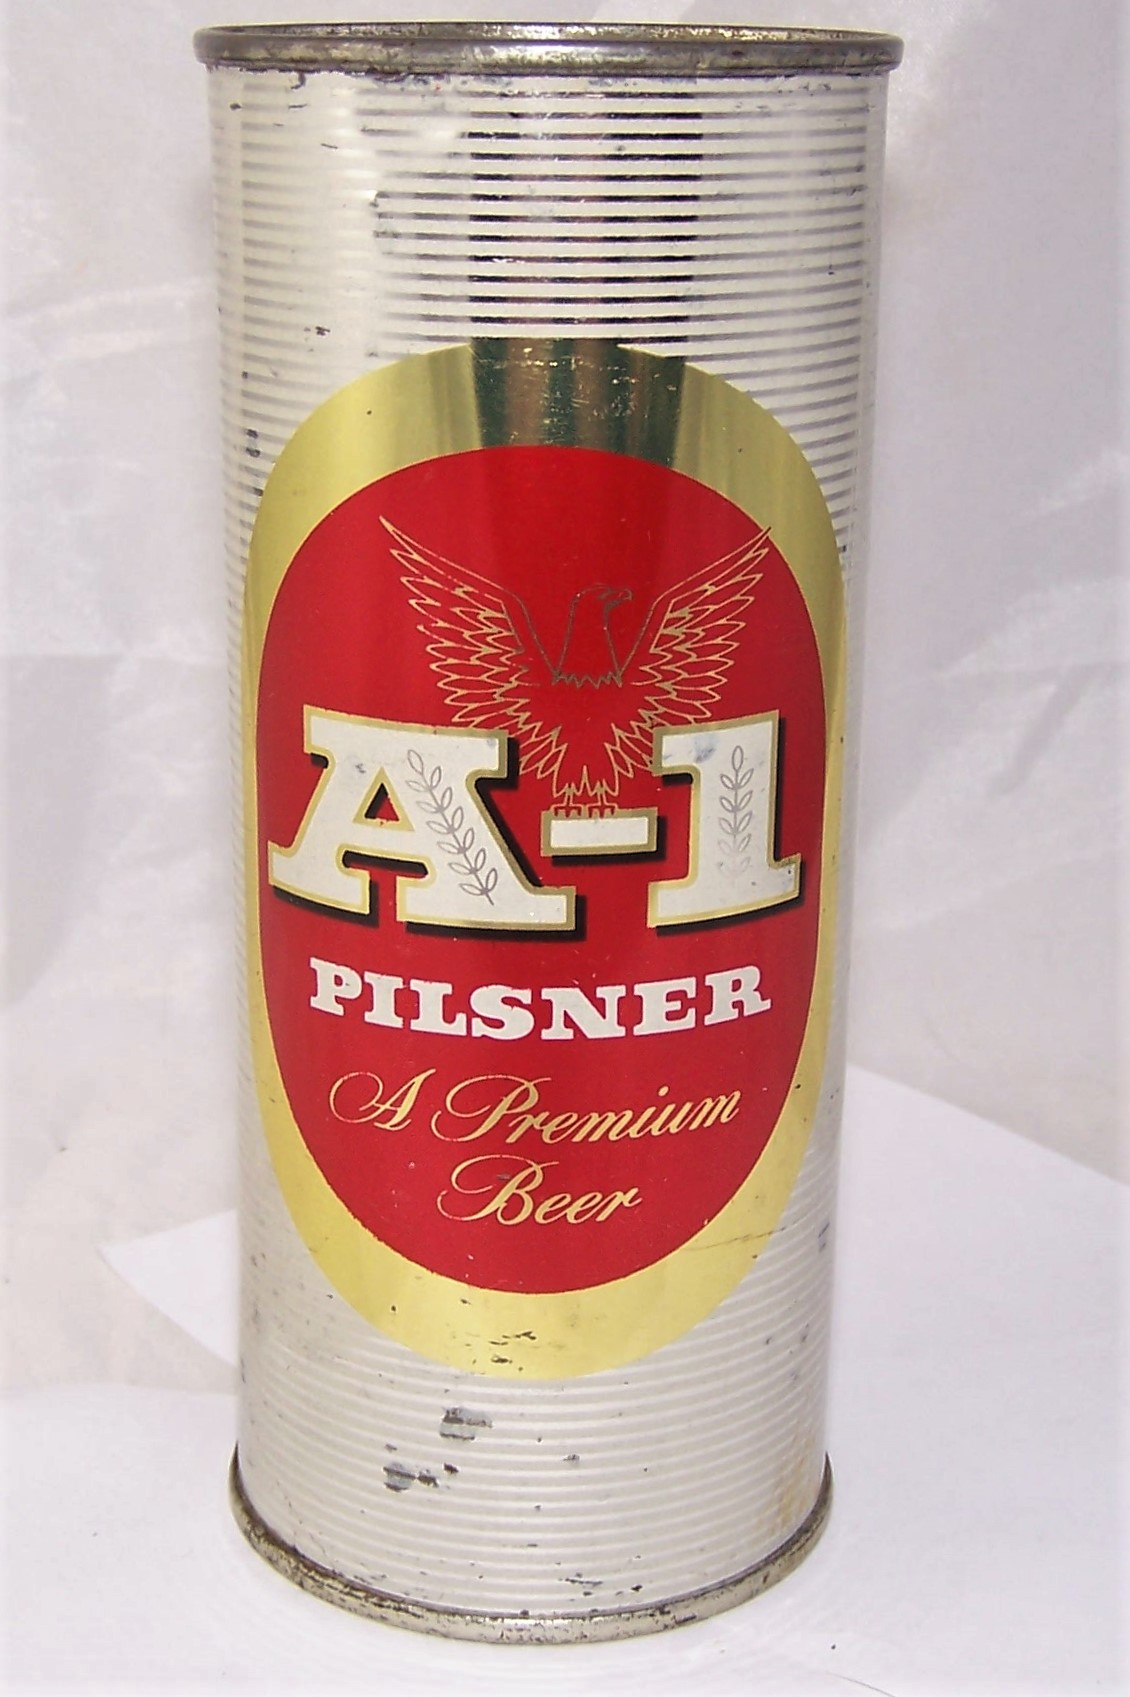 a 1 pilsner beer